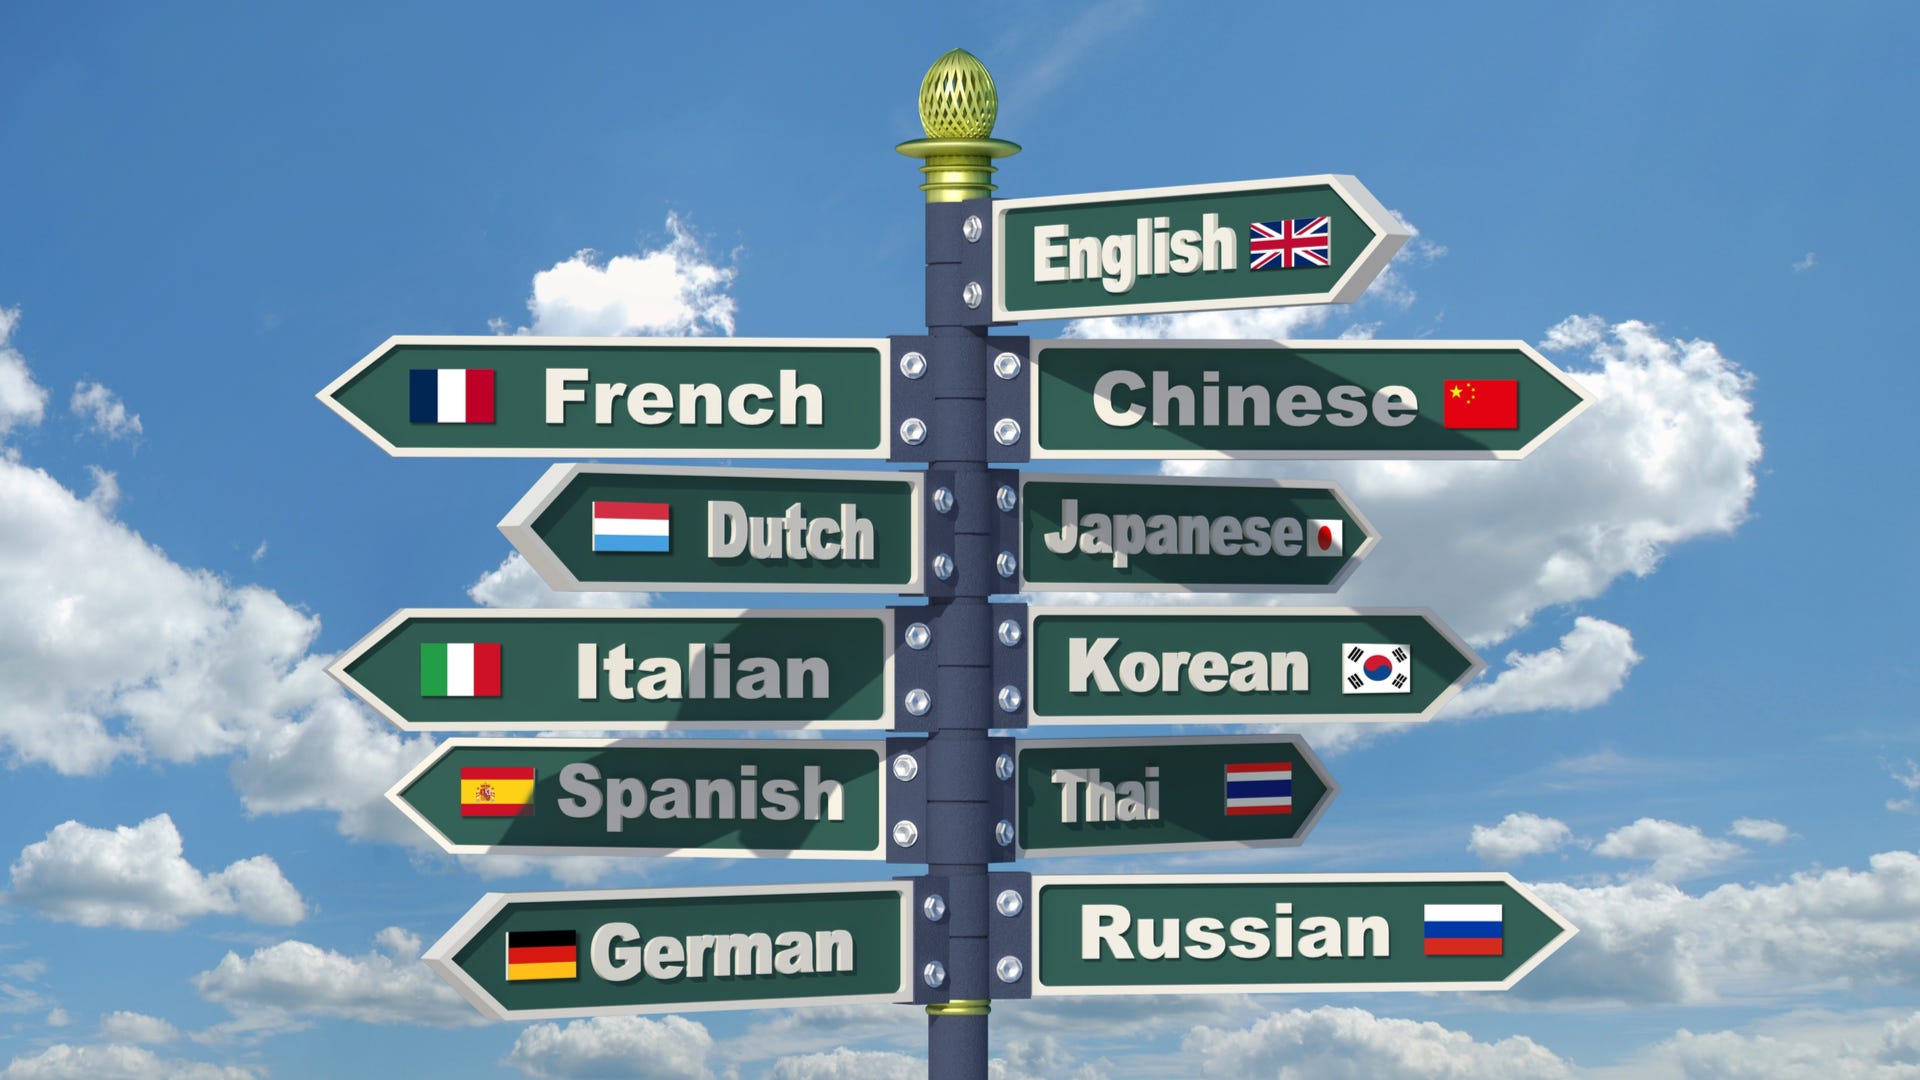 Biển báo đường hiển thị nhiều tên ngôn ngữ khác nhau từ tiếng Anh sang tiếng Ý đến tiếng Hàn